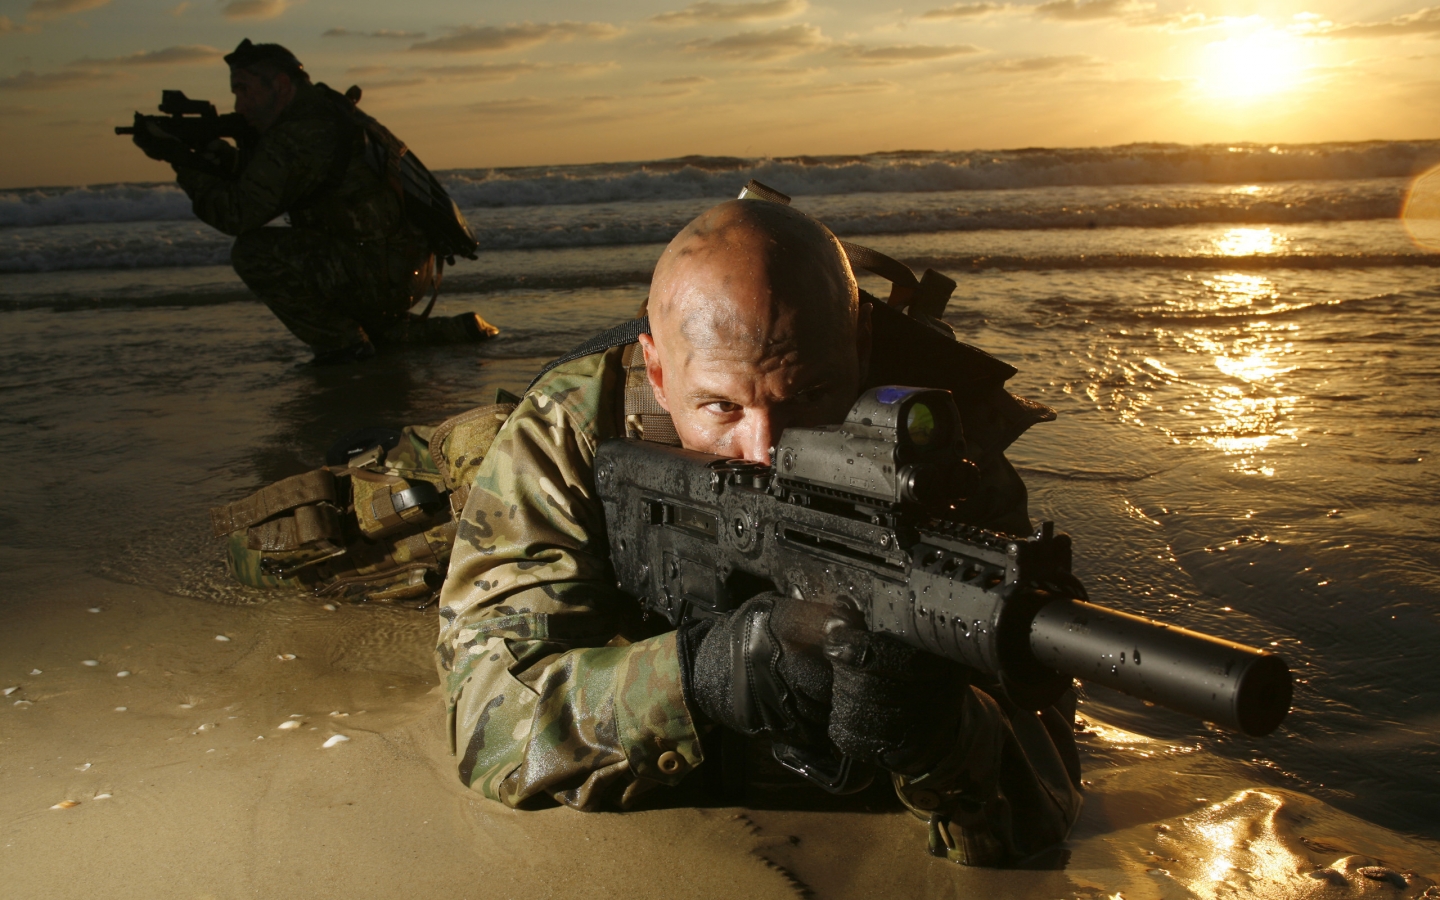 Sniper War for 1440 x 900 widescreen resolution